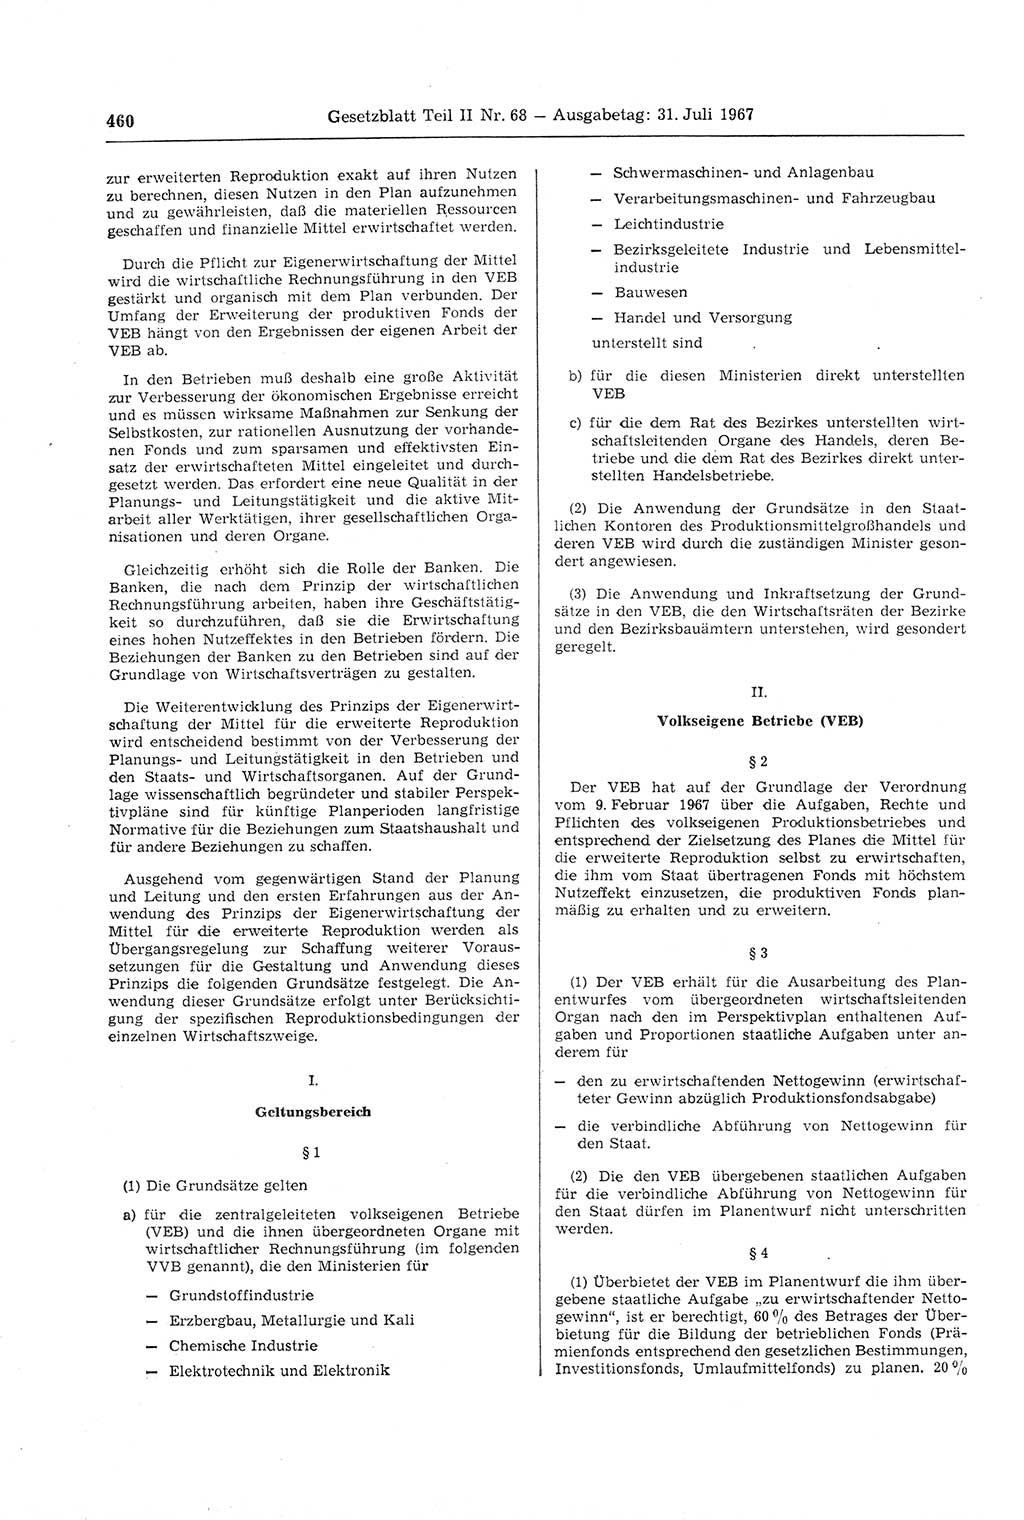 Gesetzblatt (GBl.) der Deutschen Demokratischen Republik (DDR) Teil ⅠⅠ 1967, Seite 460 (GBl. DDR ⅠⅠ 1967, S. 460)